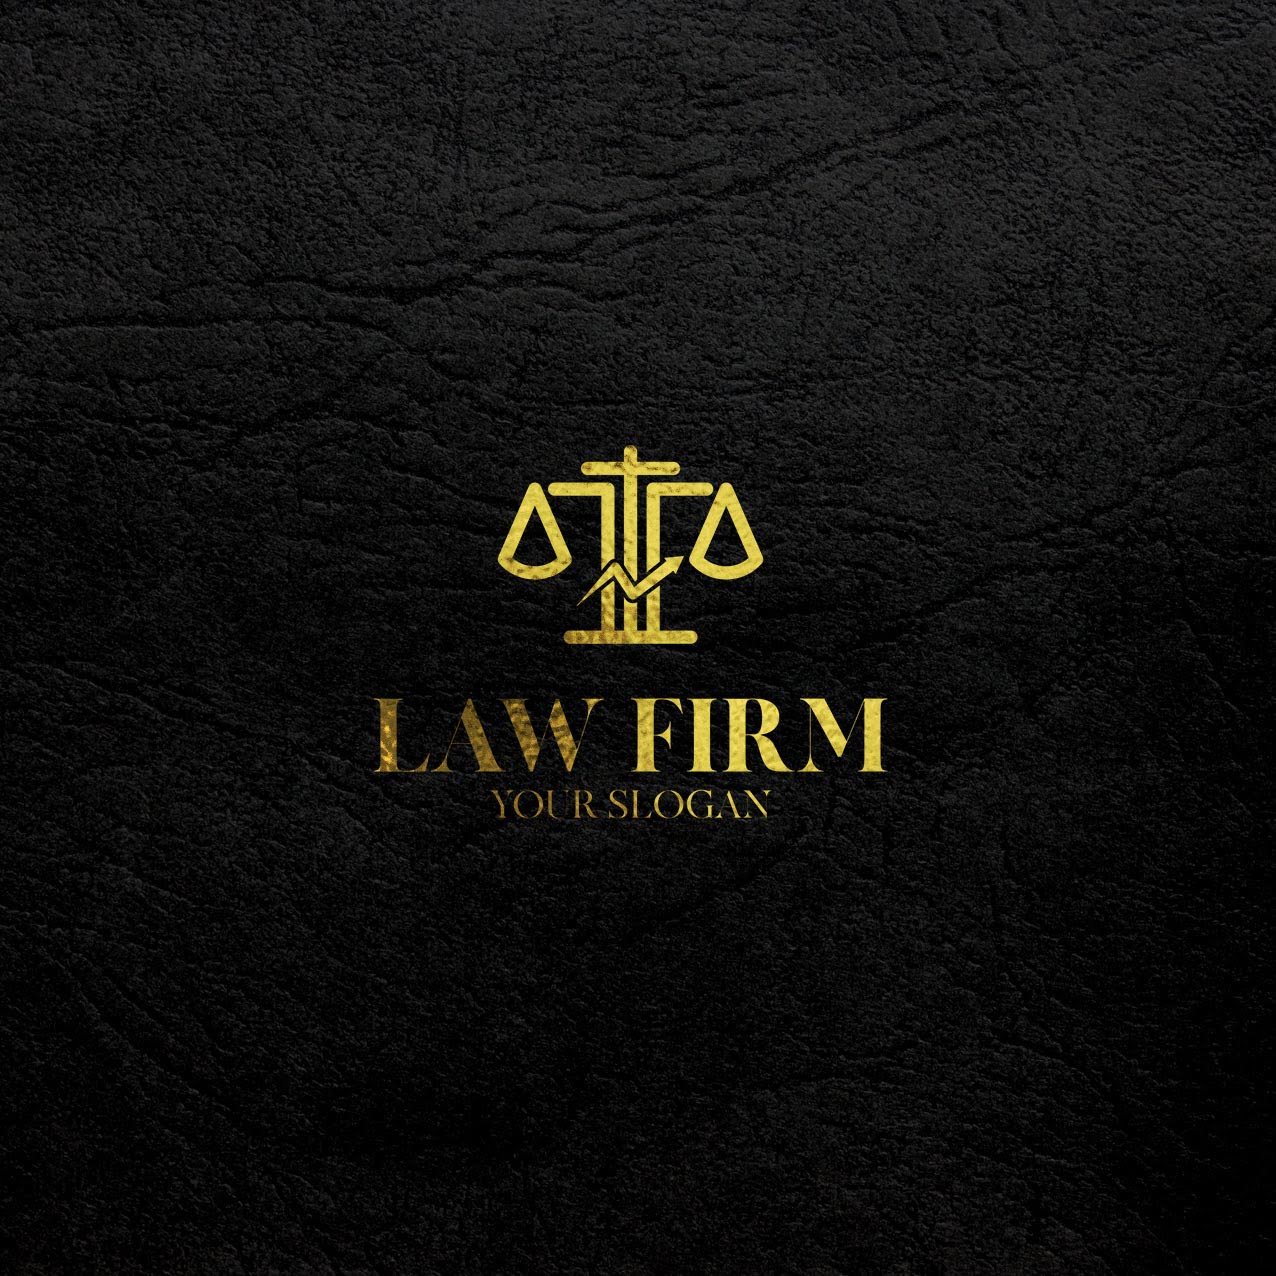 luxury law firm presentation